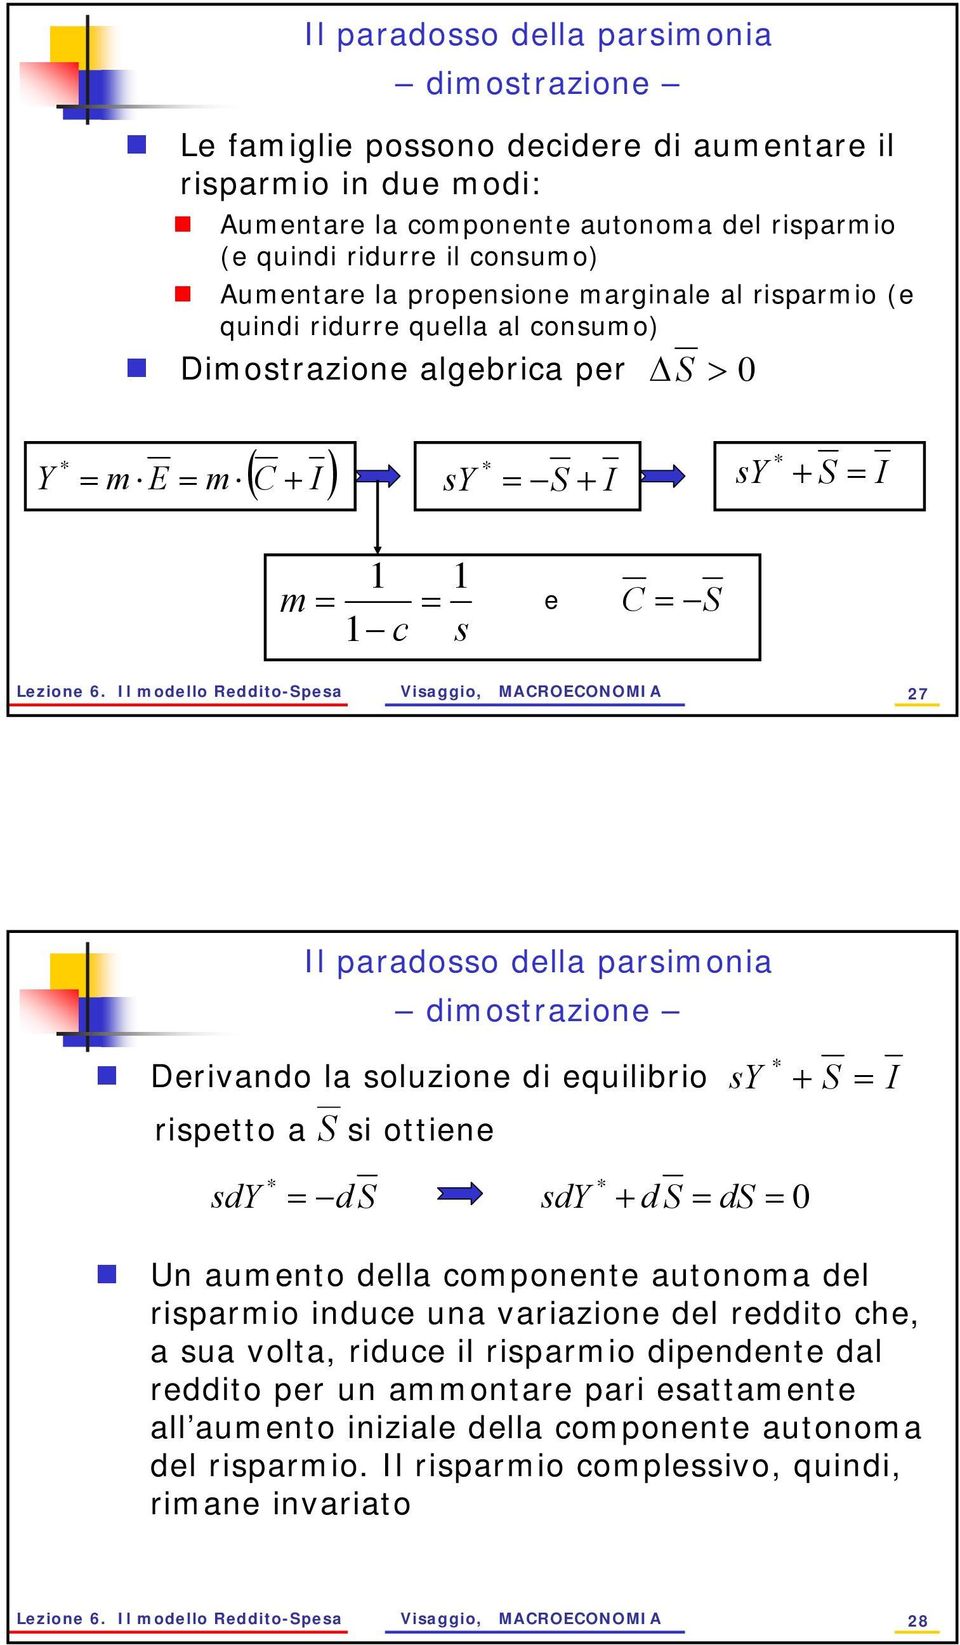 Il modello Reddito-Spesa Visaggio, MACROECONOMIA 27 Il paradosso della parsimonia dimostrazione Derivando la soluzione di equilibrio rispetto a S si ottiene s + S = I sd = d S sd + d S = ds = 0 Un